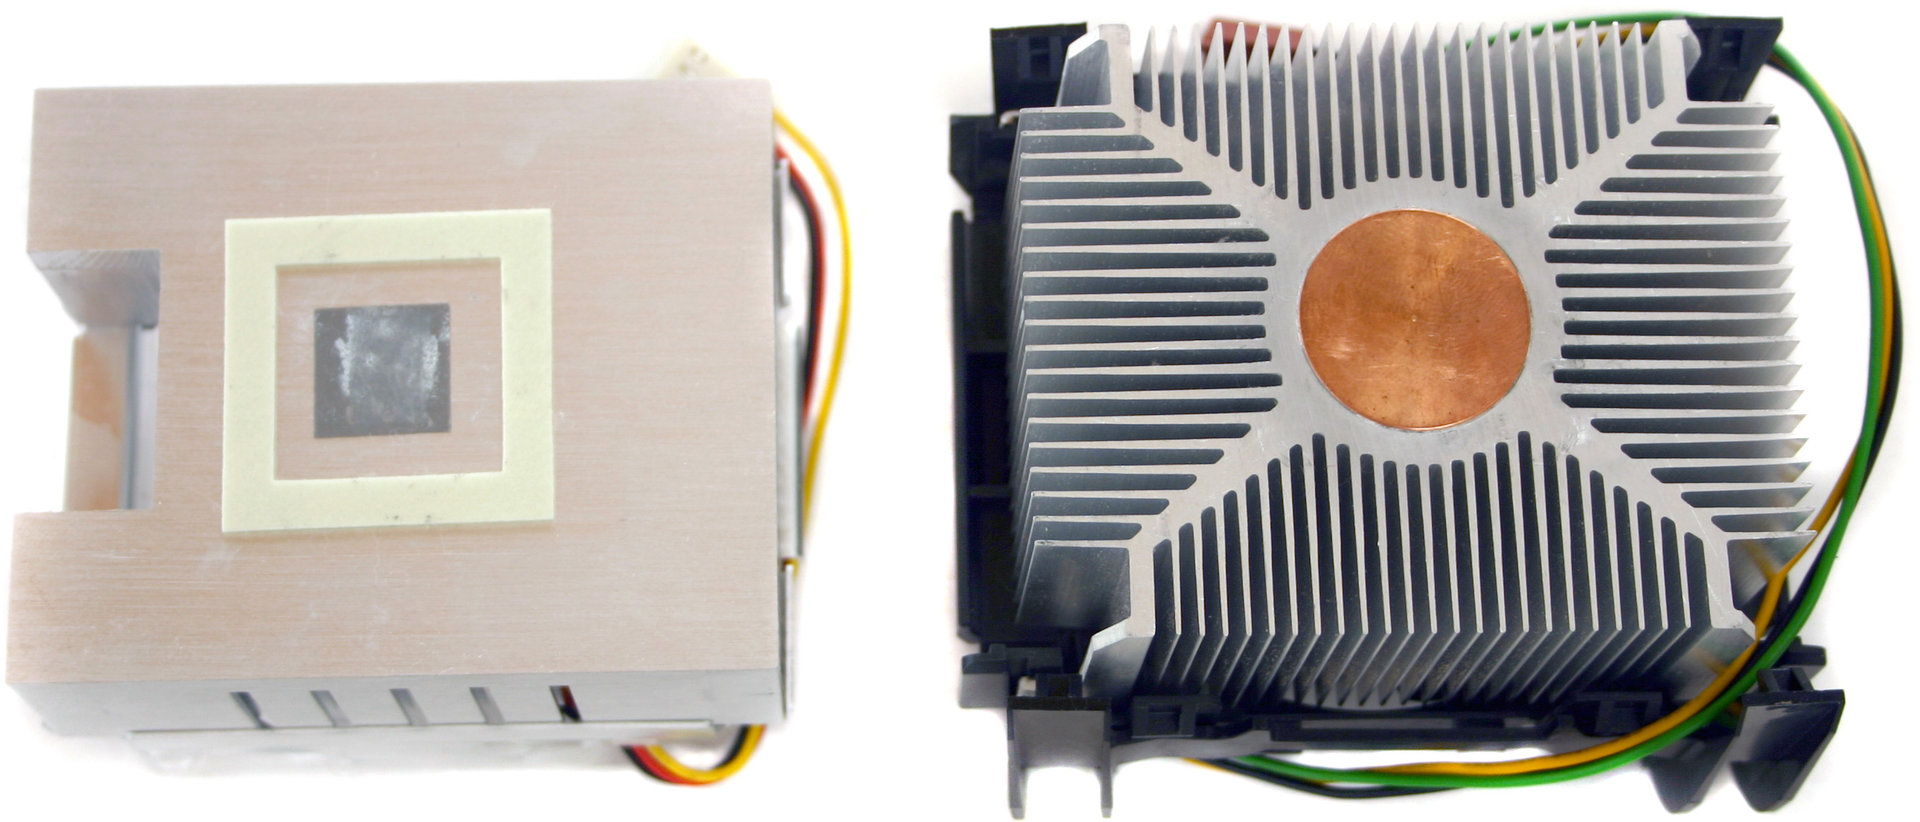 Asus Pentium M Kühler vs. Intel Pentium 4 Boxed Kühler